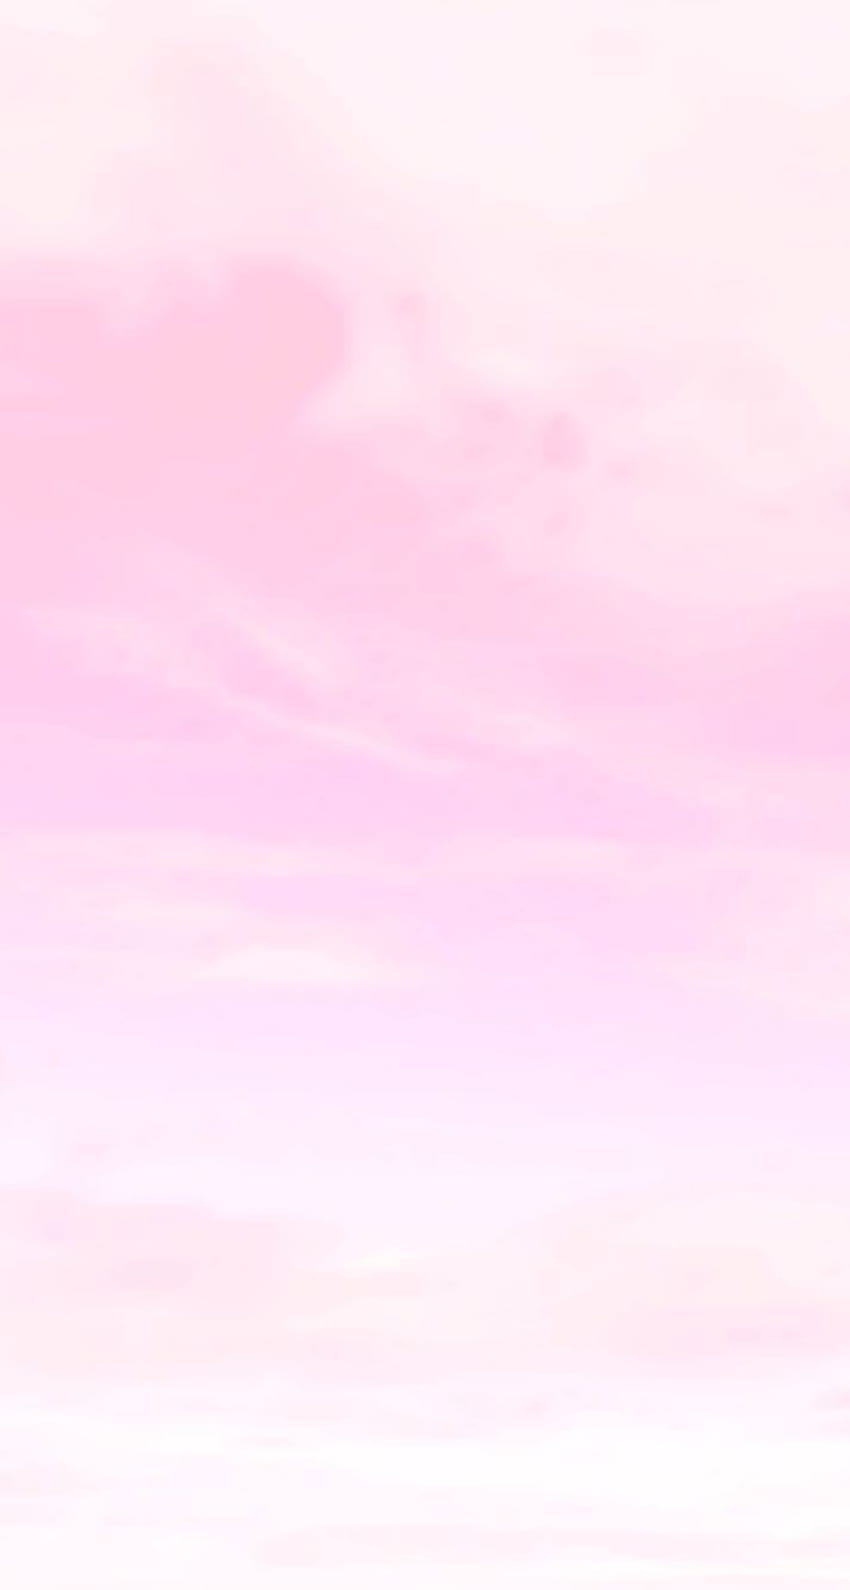 Cielo rosa pastel. Pintable, texturizado, muestras, Cute Light Pink Pastel fondo de pantalla del teléfono